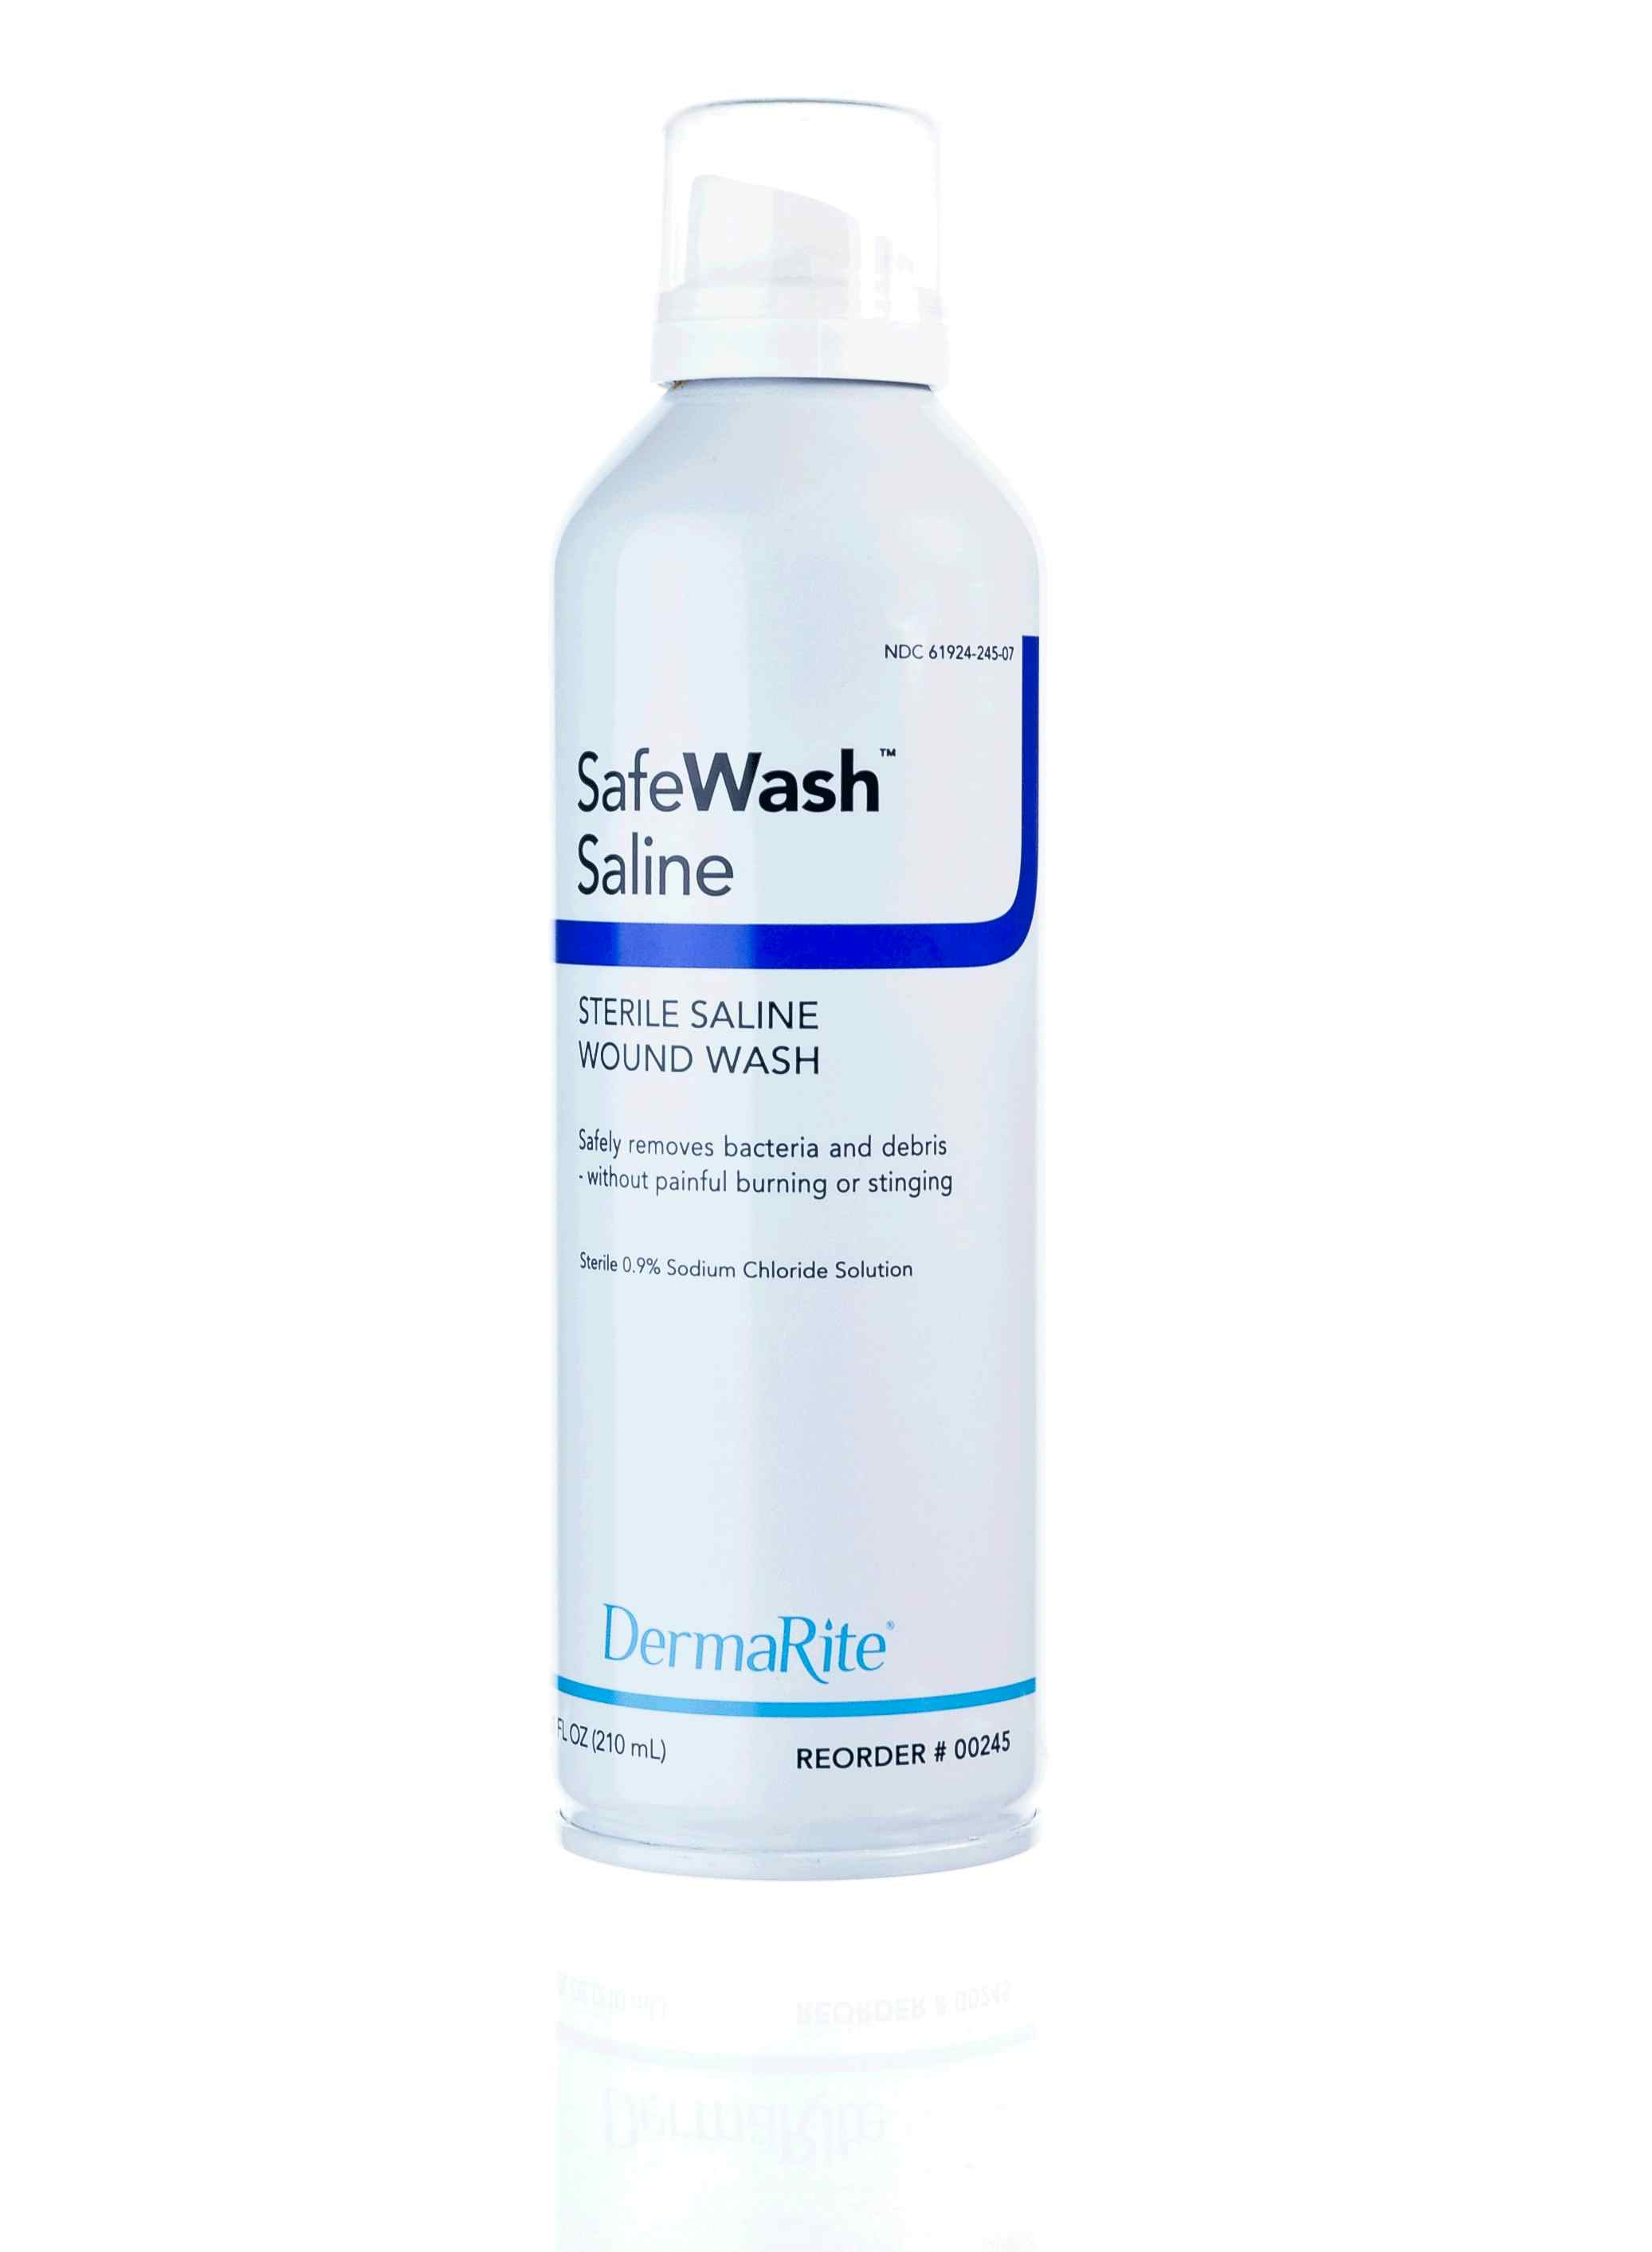 SafeWash Sterile Saline Wound Wash, 7.1 oz. Spray Can , 00245, 1 Each